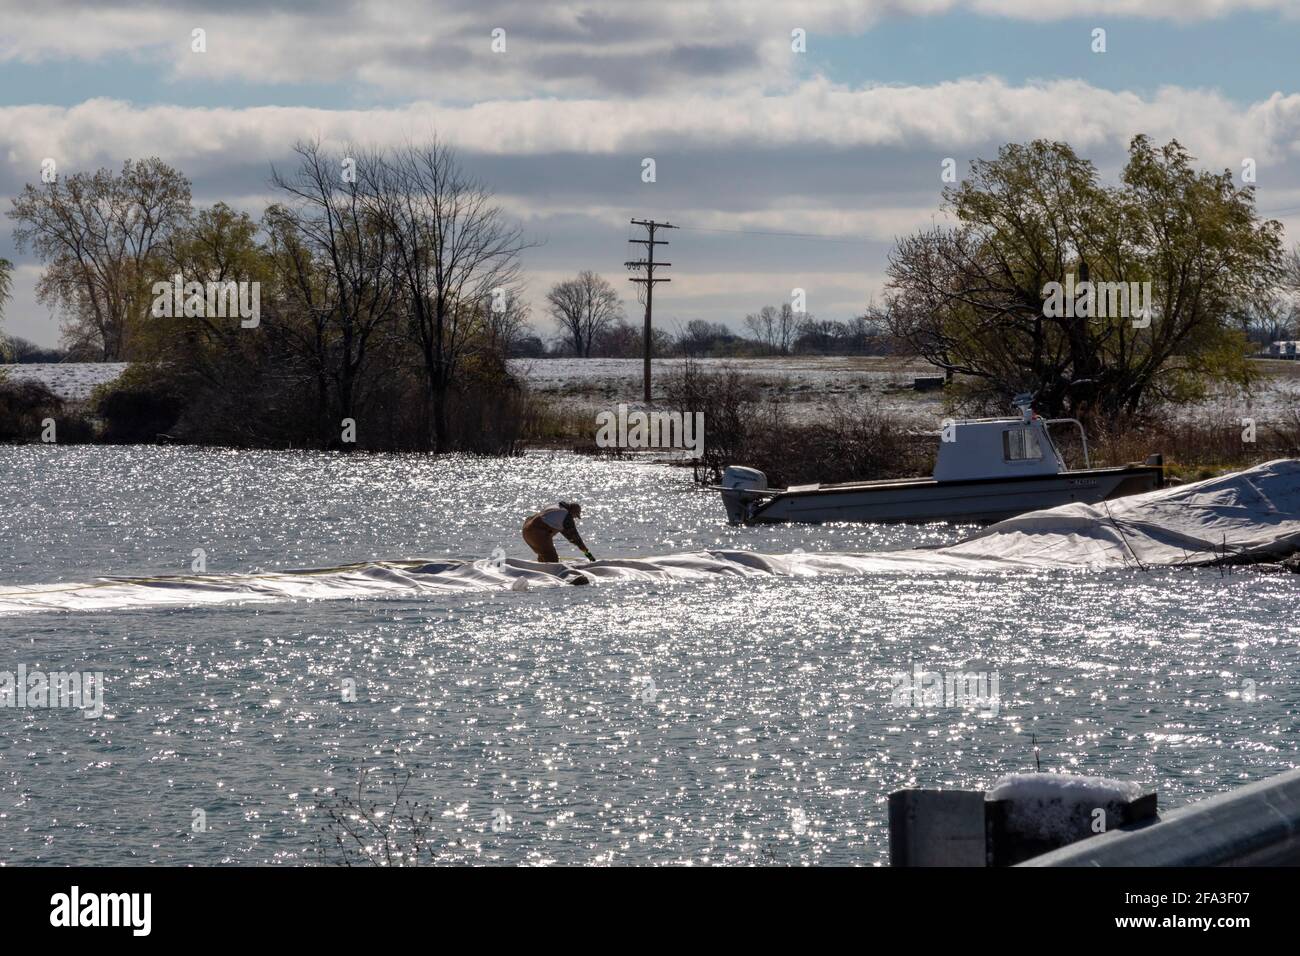 Detroit, Michigan - UN lavoratore installa una diga temporanea per proteggere Belle Isle, un parco insulare nel fiume Detroit, dalle inondazioni. Leve di acqua alta Foto Stock